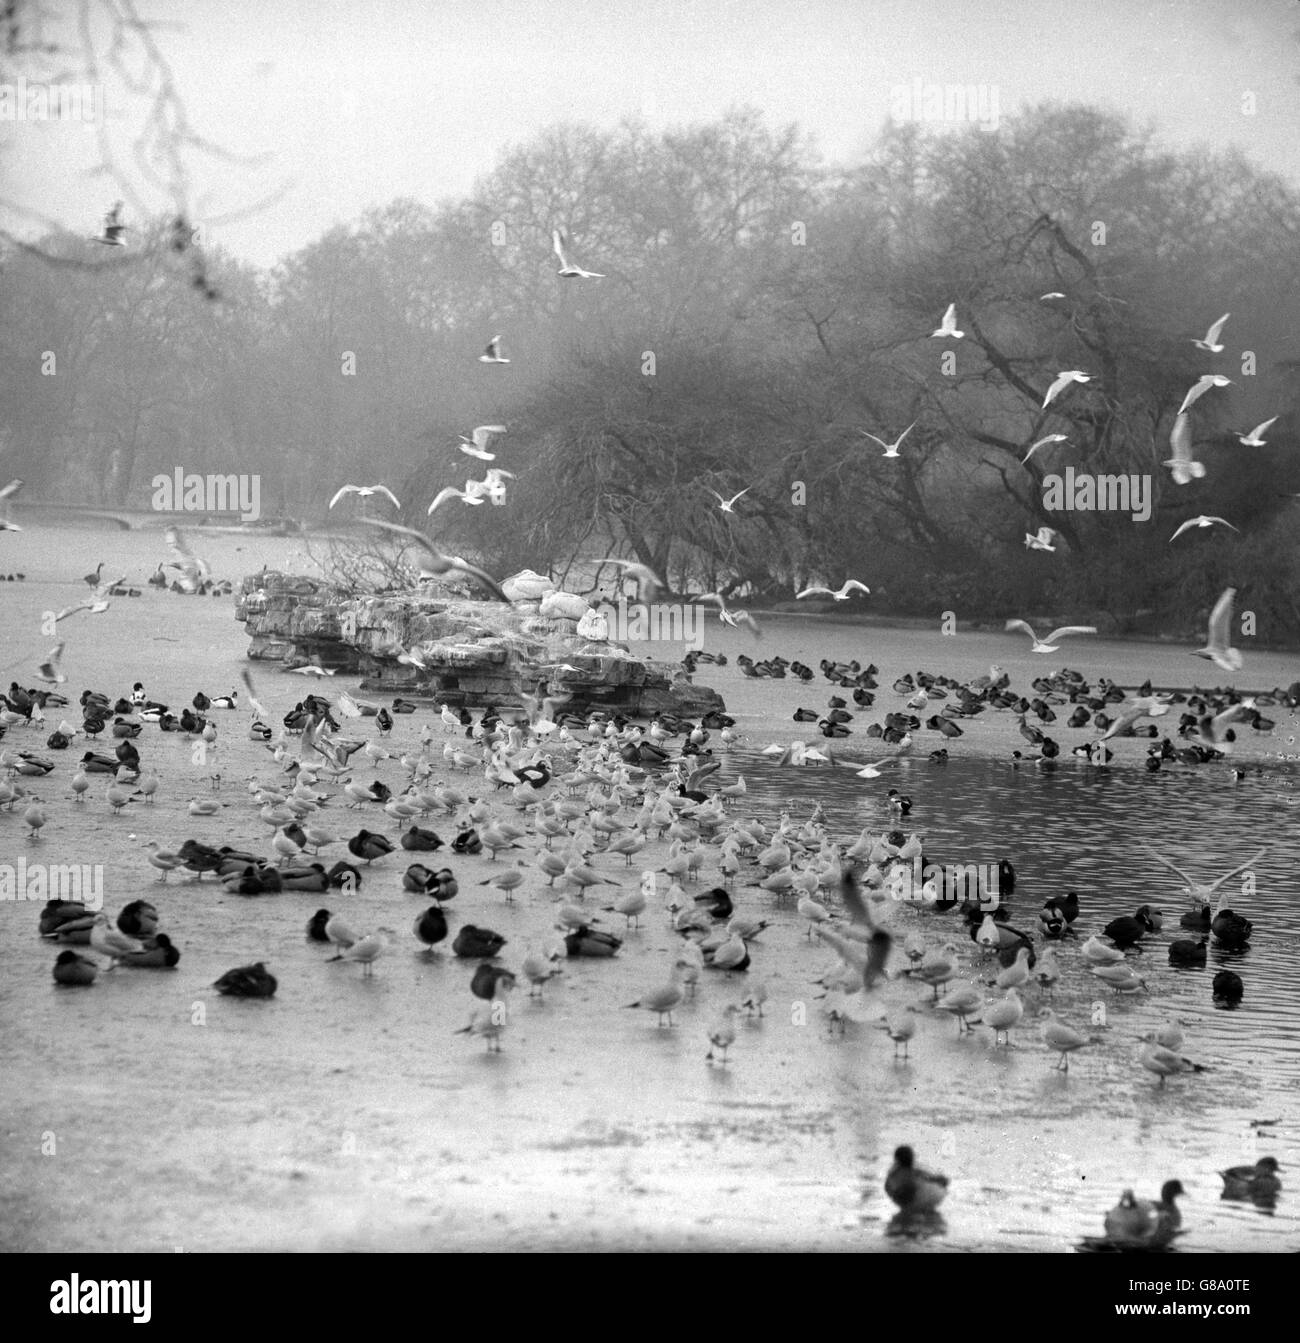 Wasservögel im St James's Park versammeln sich auf einem ungefrorenen Fleck im eisigen See. Stockfoto